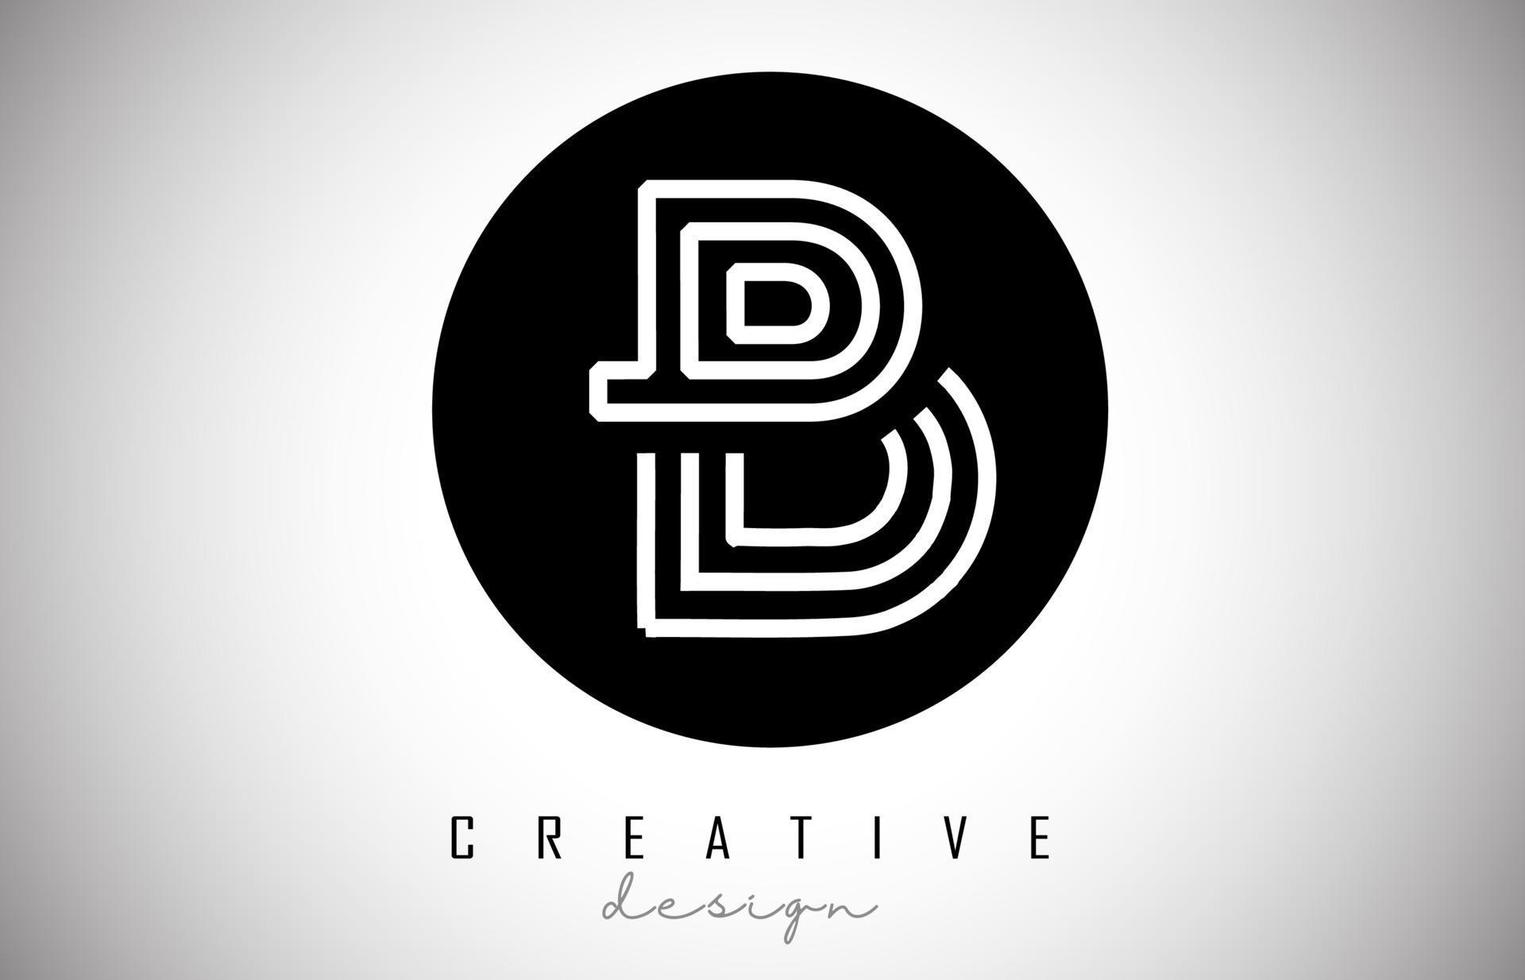 b lettre logo monogramme conception de vecteur. icône de lettre b créative sur cercle noir vecteur